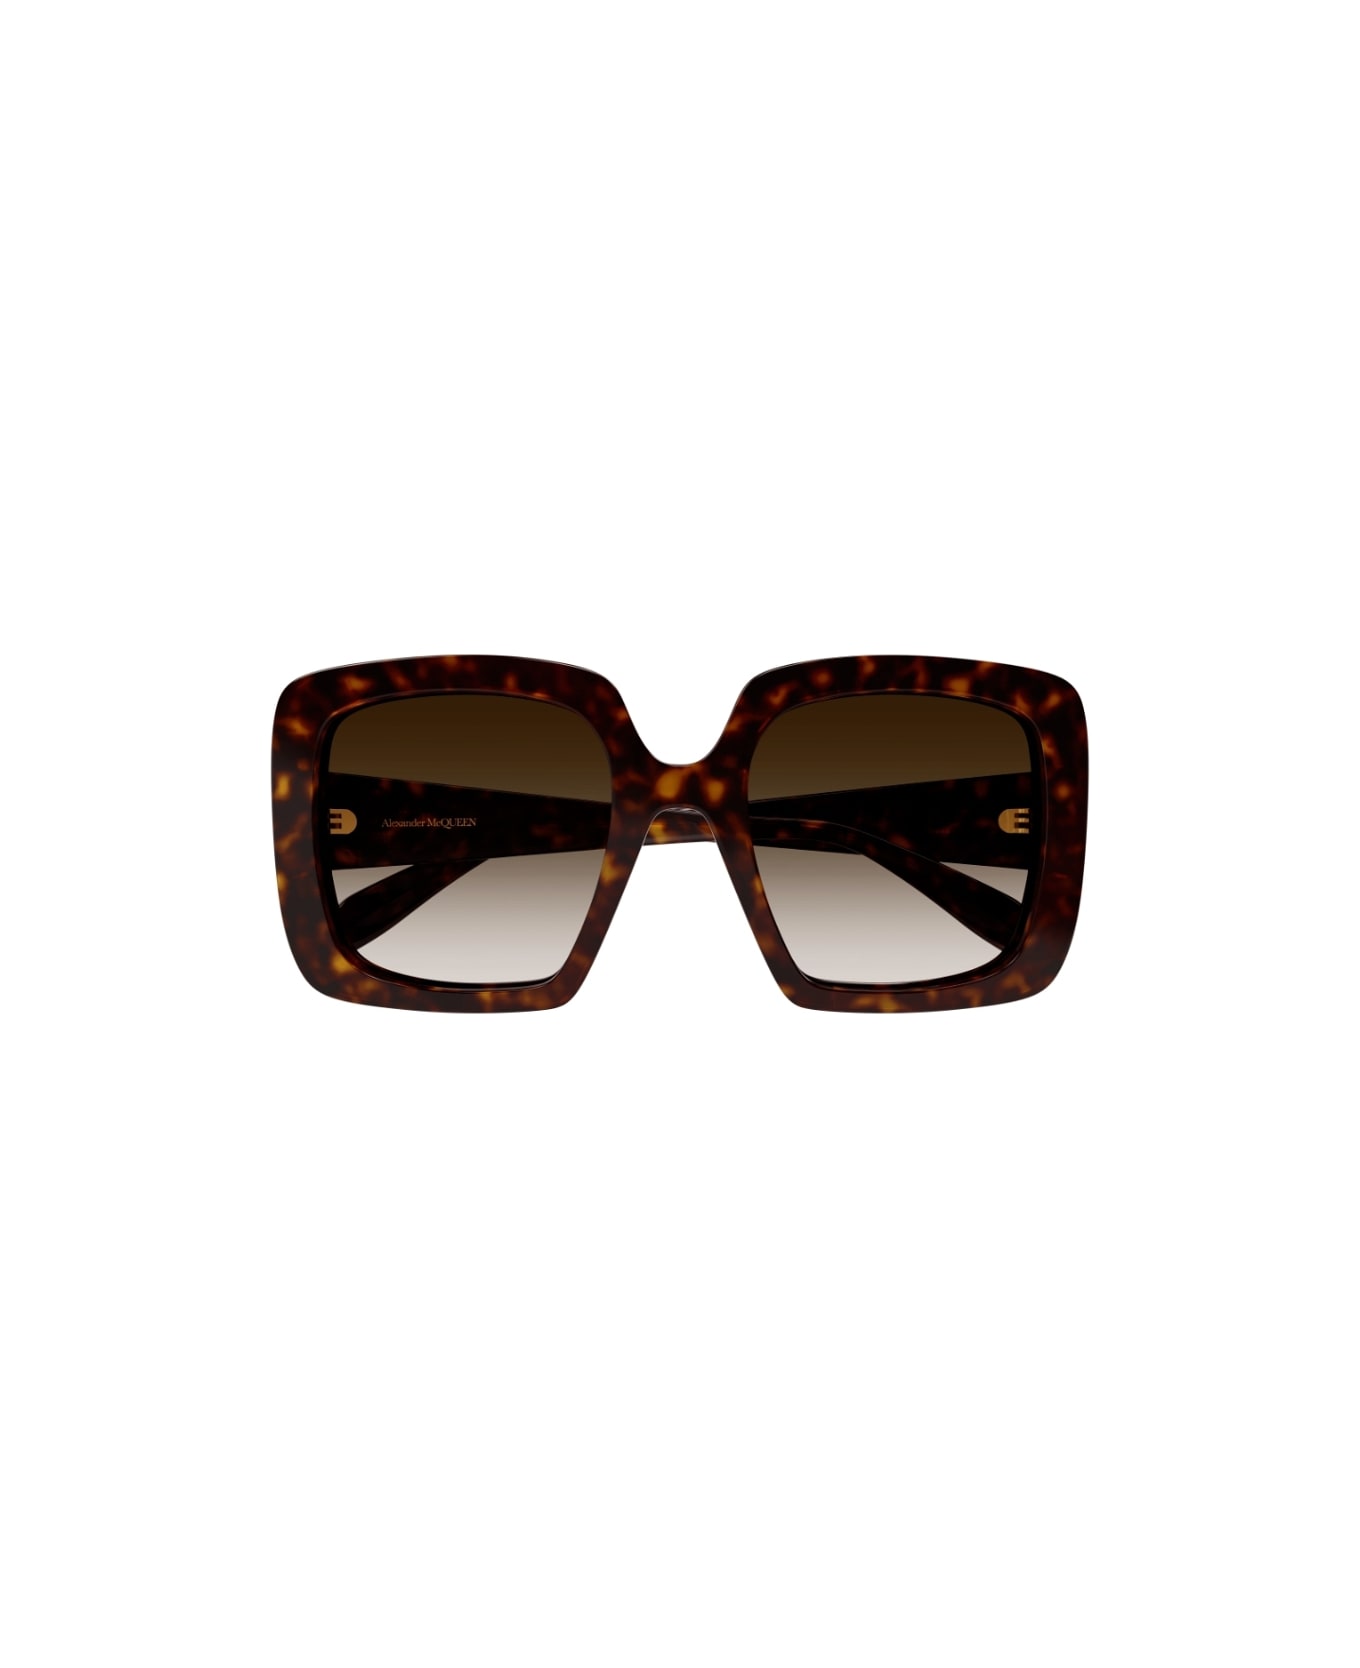 Alexander McQueen Eyewear AM078S 002 Sunglasses